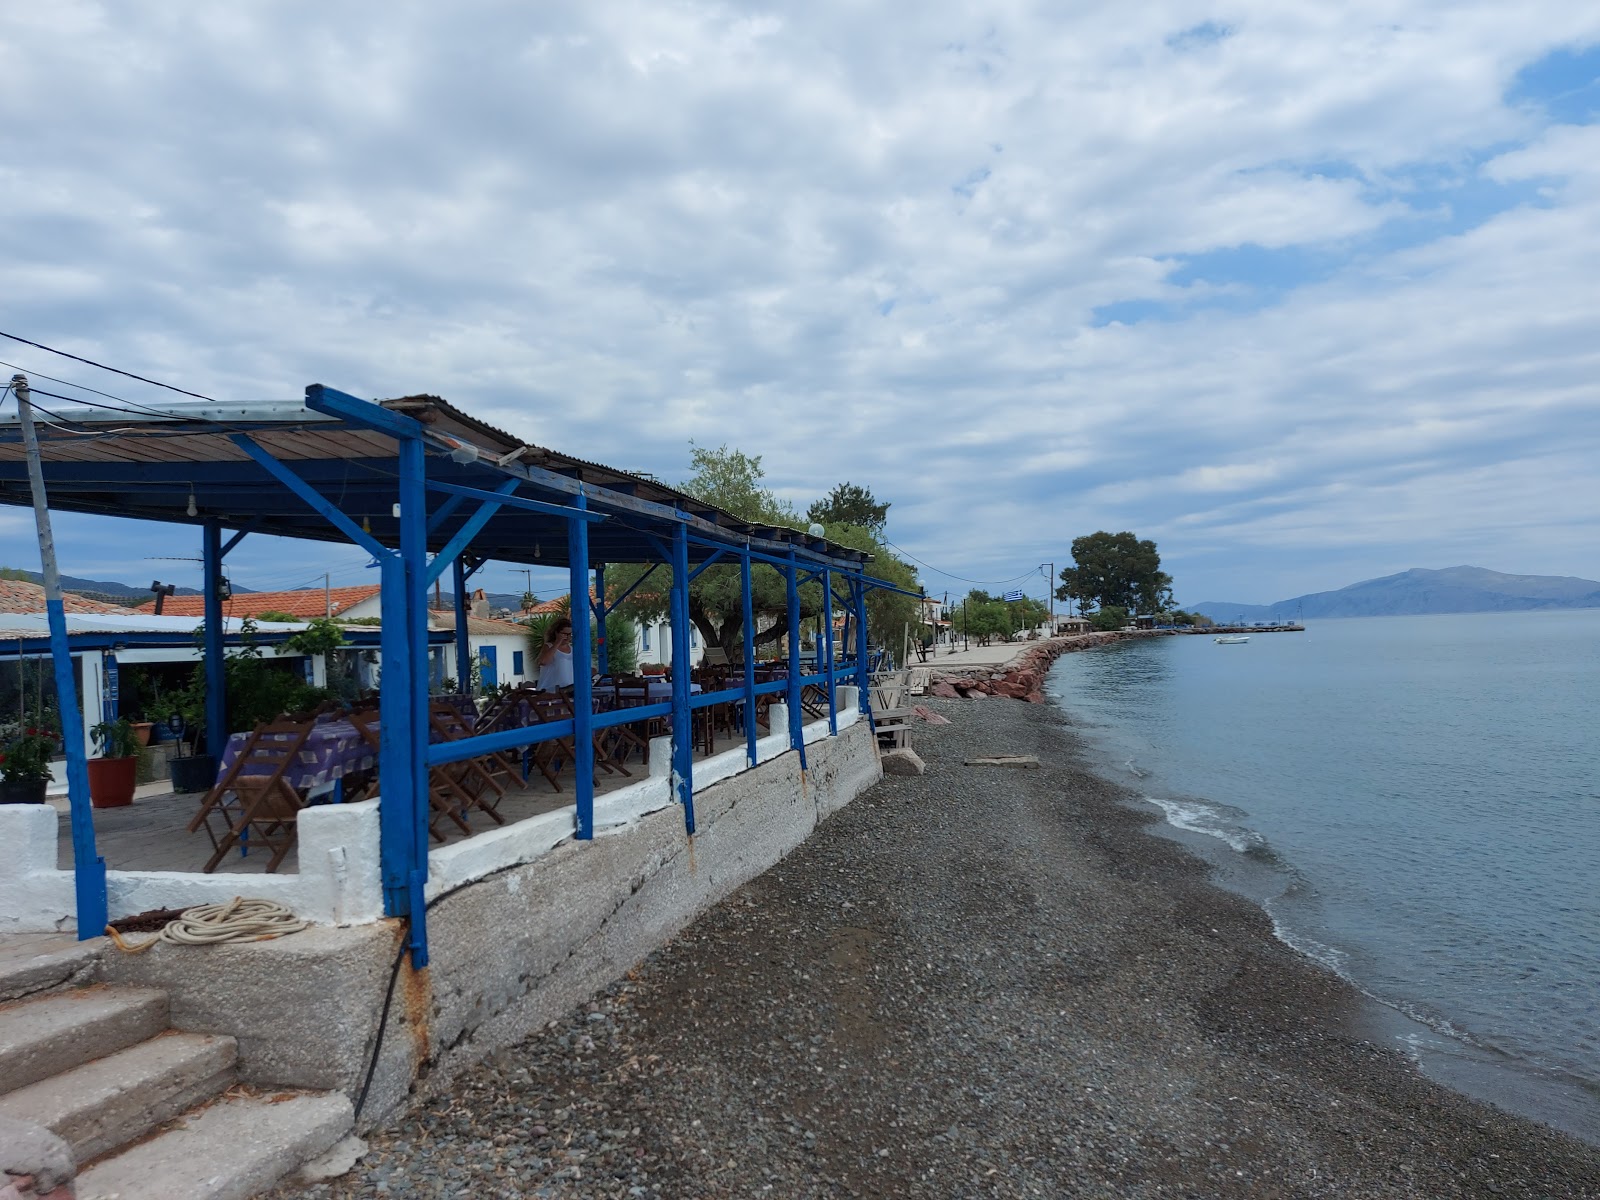 Foto af Pigadia beach - populært sted blandt afslapningskendere